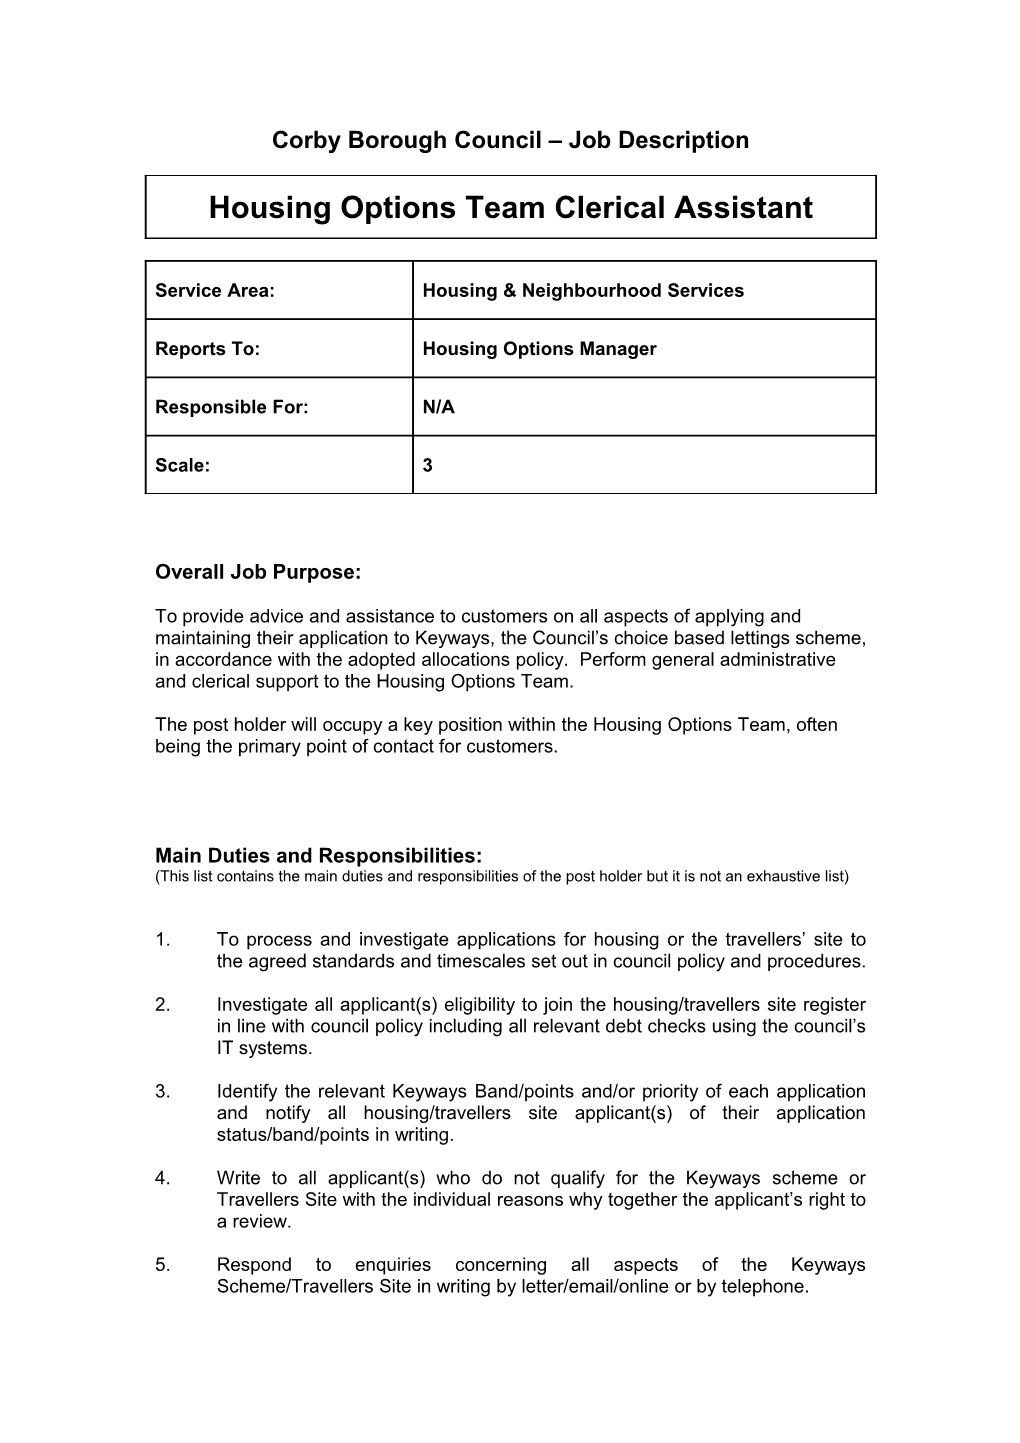 Corby Borough Council Job Description s5